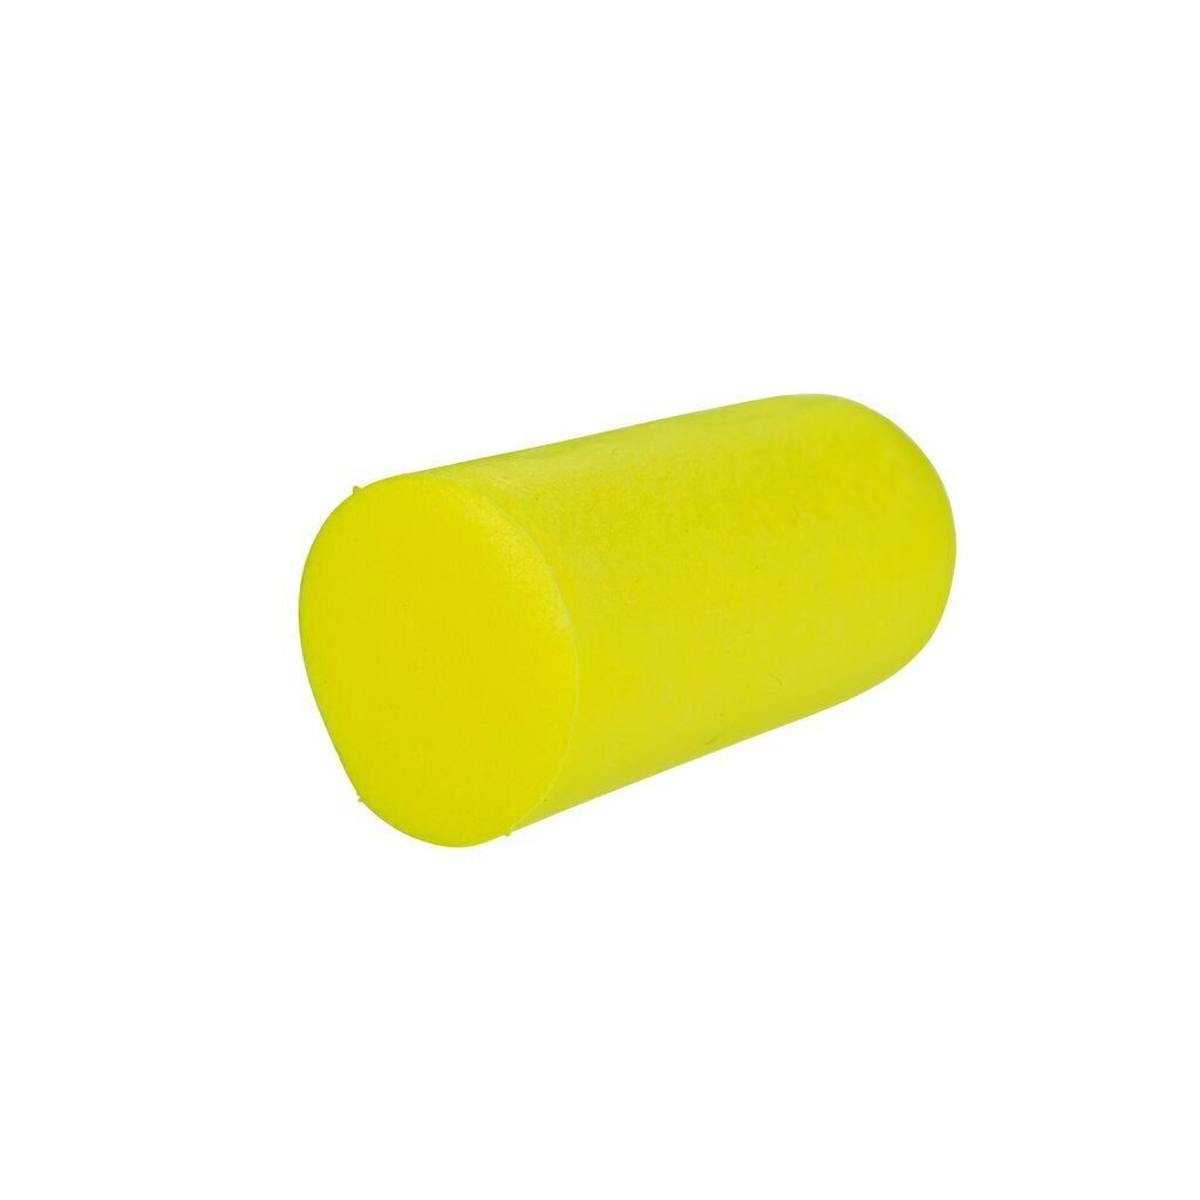 3M E-A-R Soft Yellow Neons, in poliuretano, flessibile e confortevole, in coppia in busta, giallo neon, SNR=36 dB, ES01001